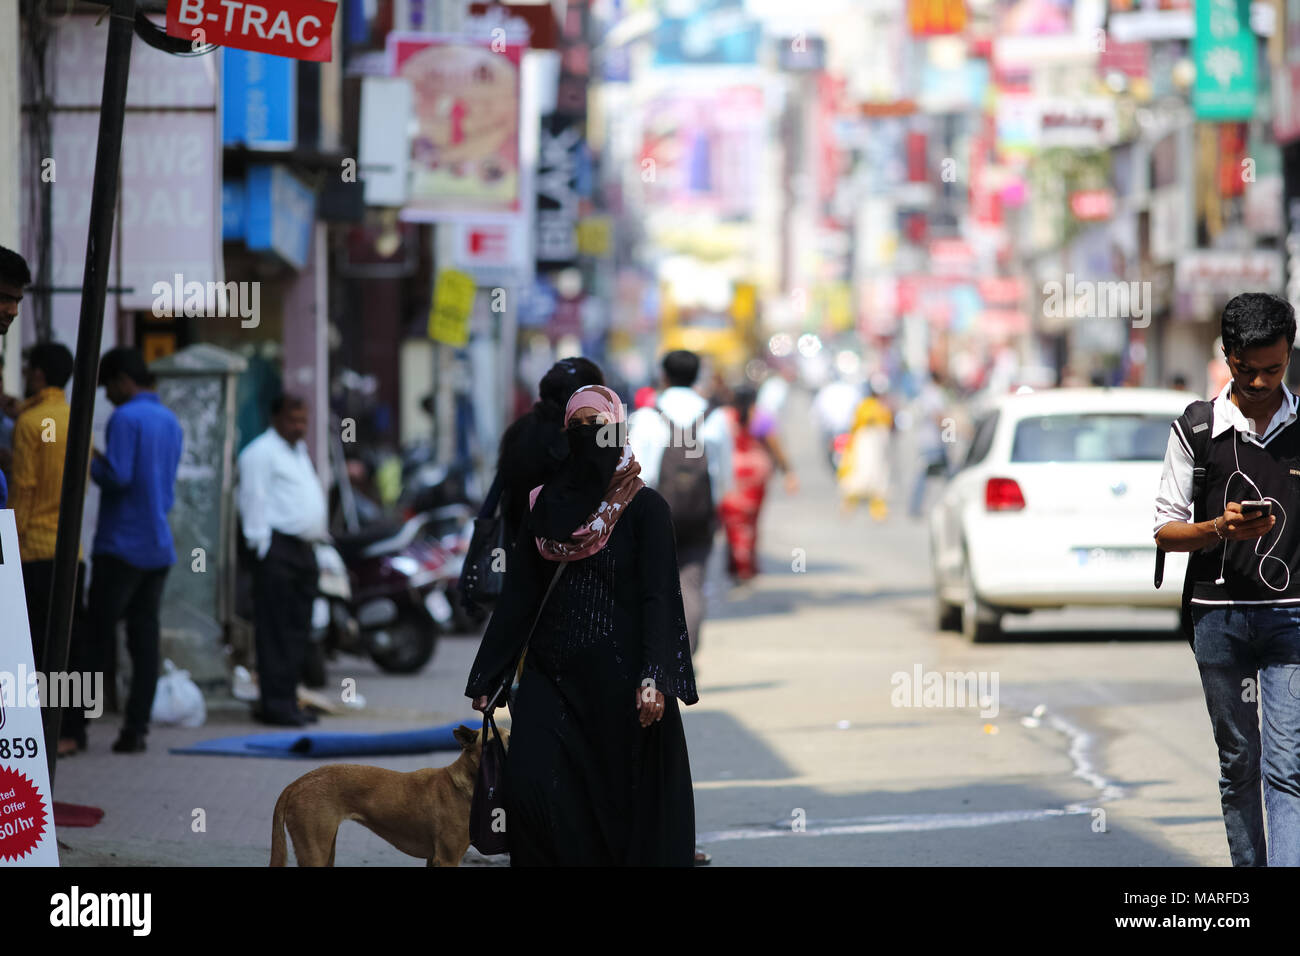 Bangalore, India - 20 Ottobre 2016: Sconosciuto donna musulmana in abito tradizionale avvistato al strada commerciale nel pre-le ore di picco. Foto Stock